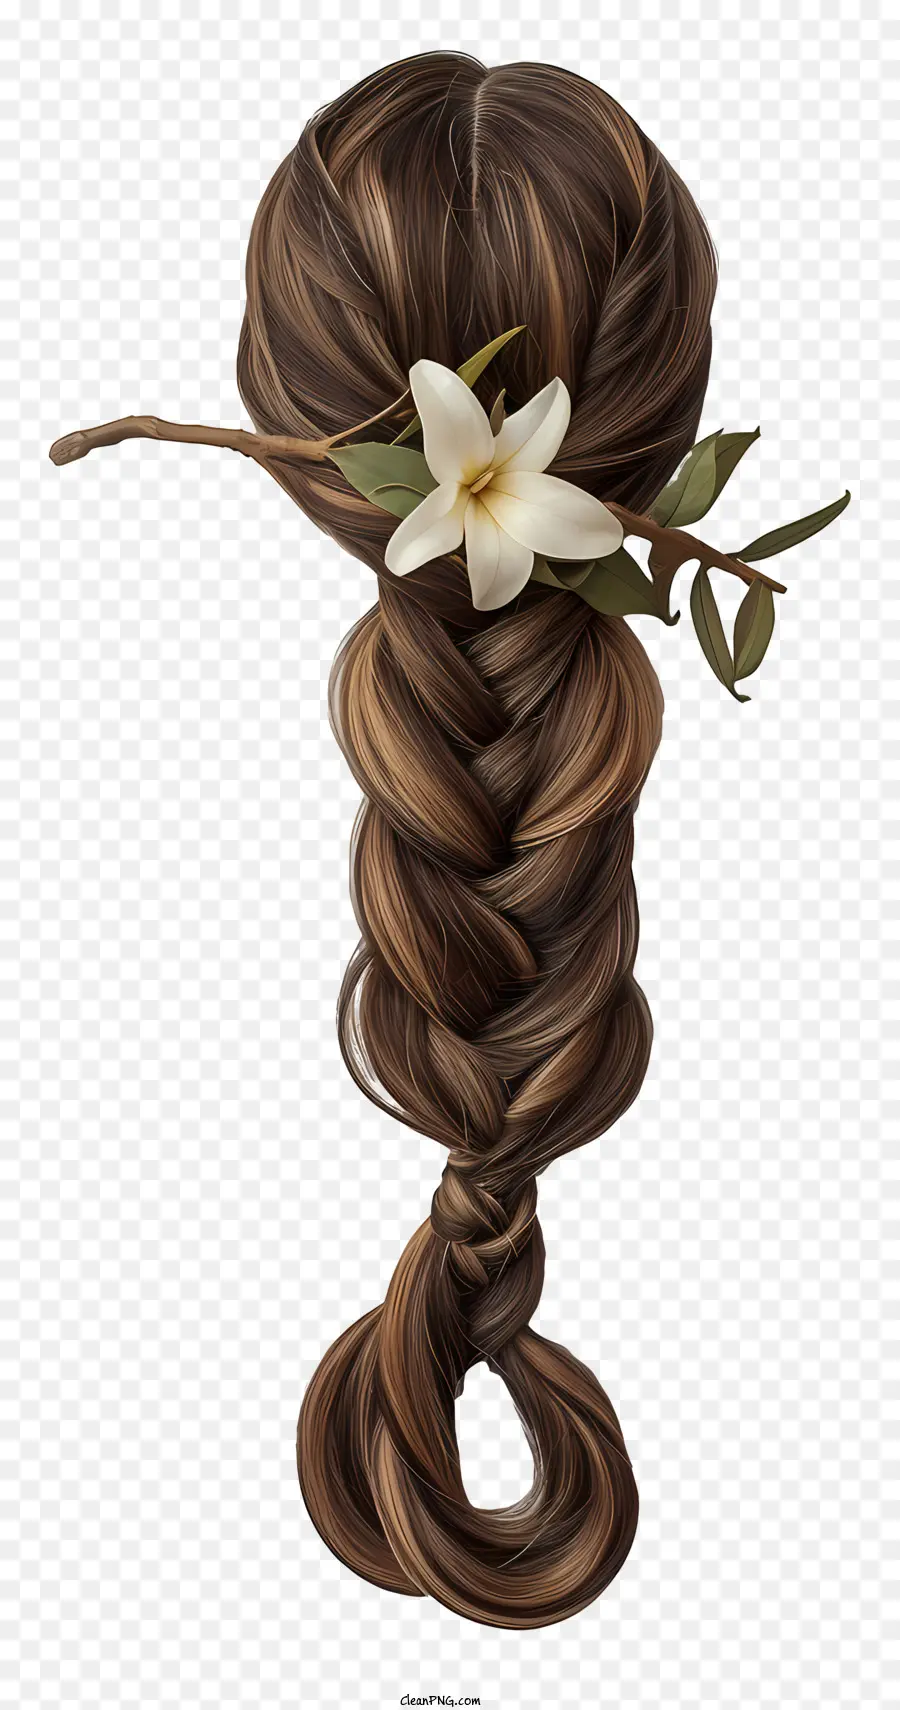 geflochtene Haar Perücke lange braune Haare Geflecht Frisur weiße Blumen in Haarzubehör Accessoires - Bild: Frau mit langen braun geflochtenen Haaren, geschmückt mit Blumen